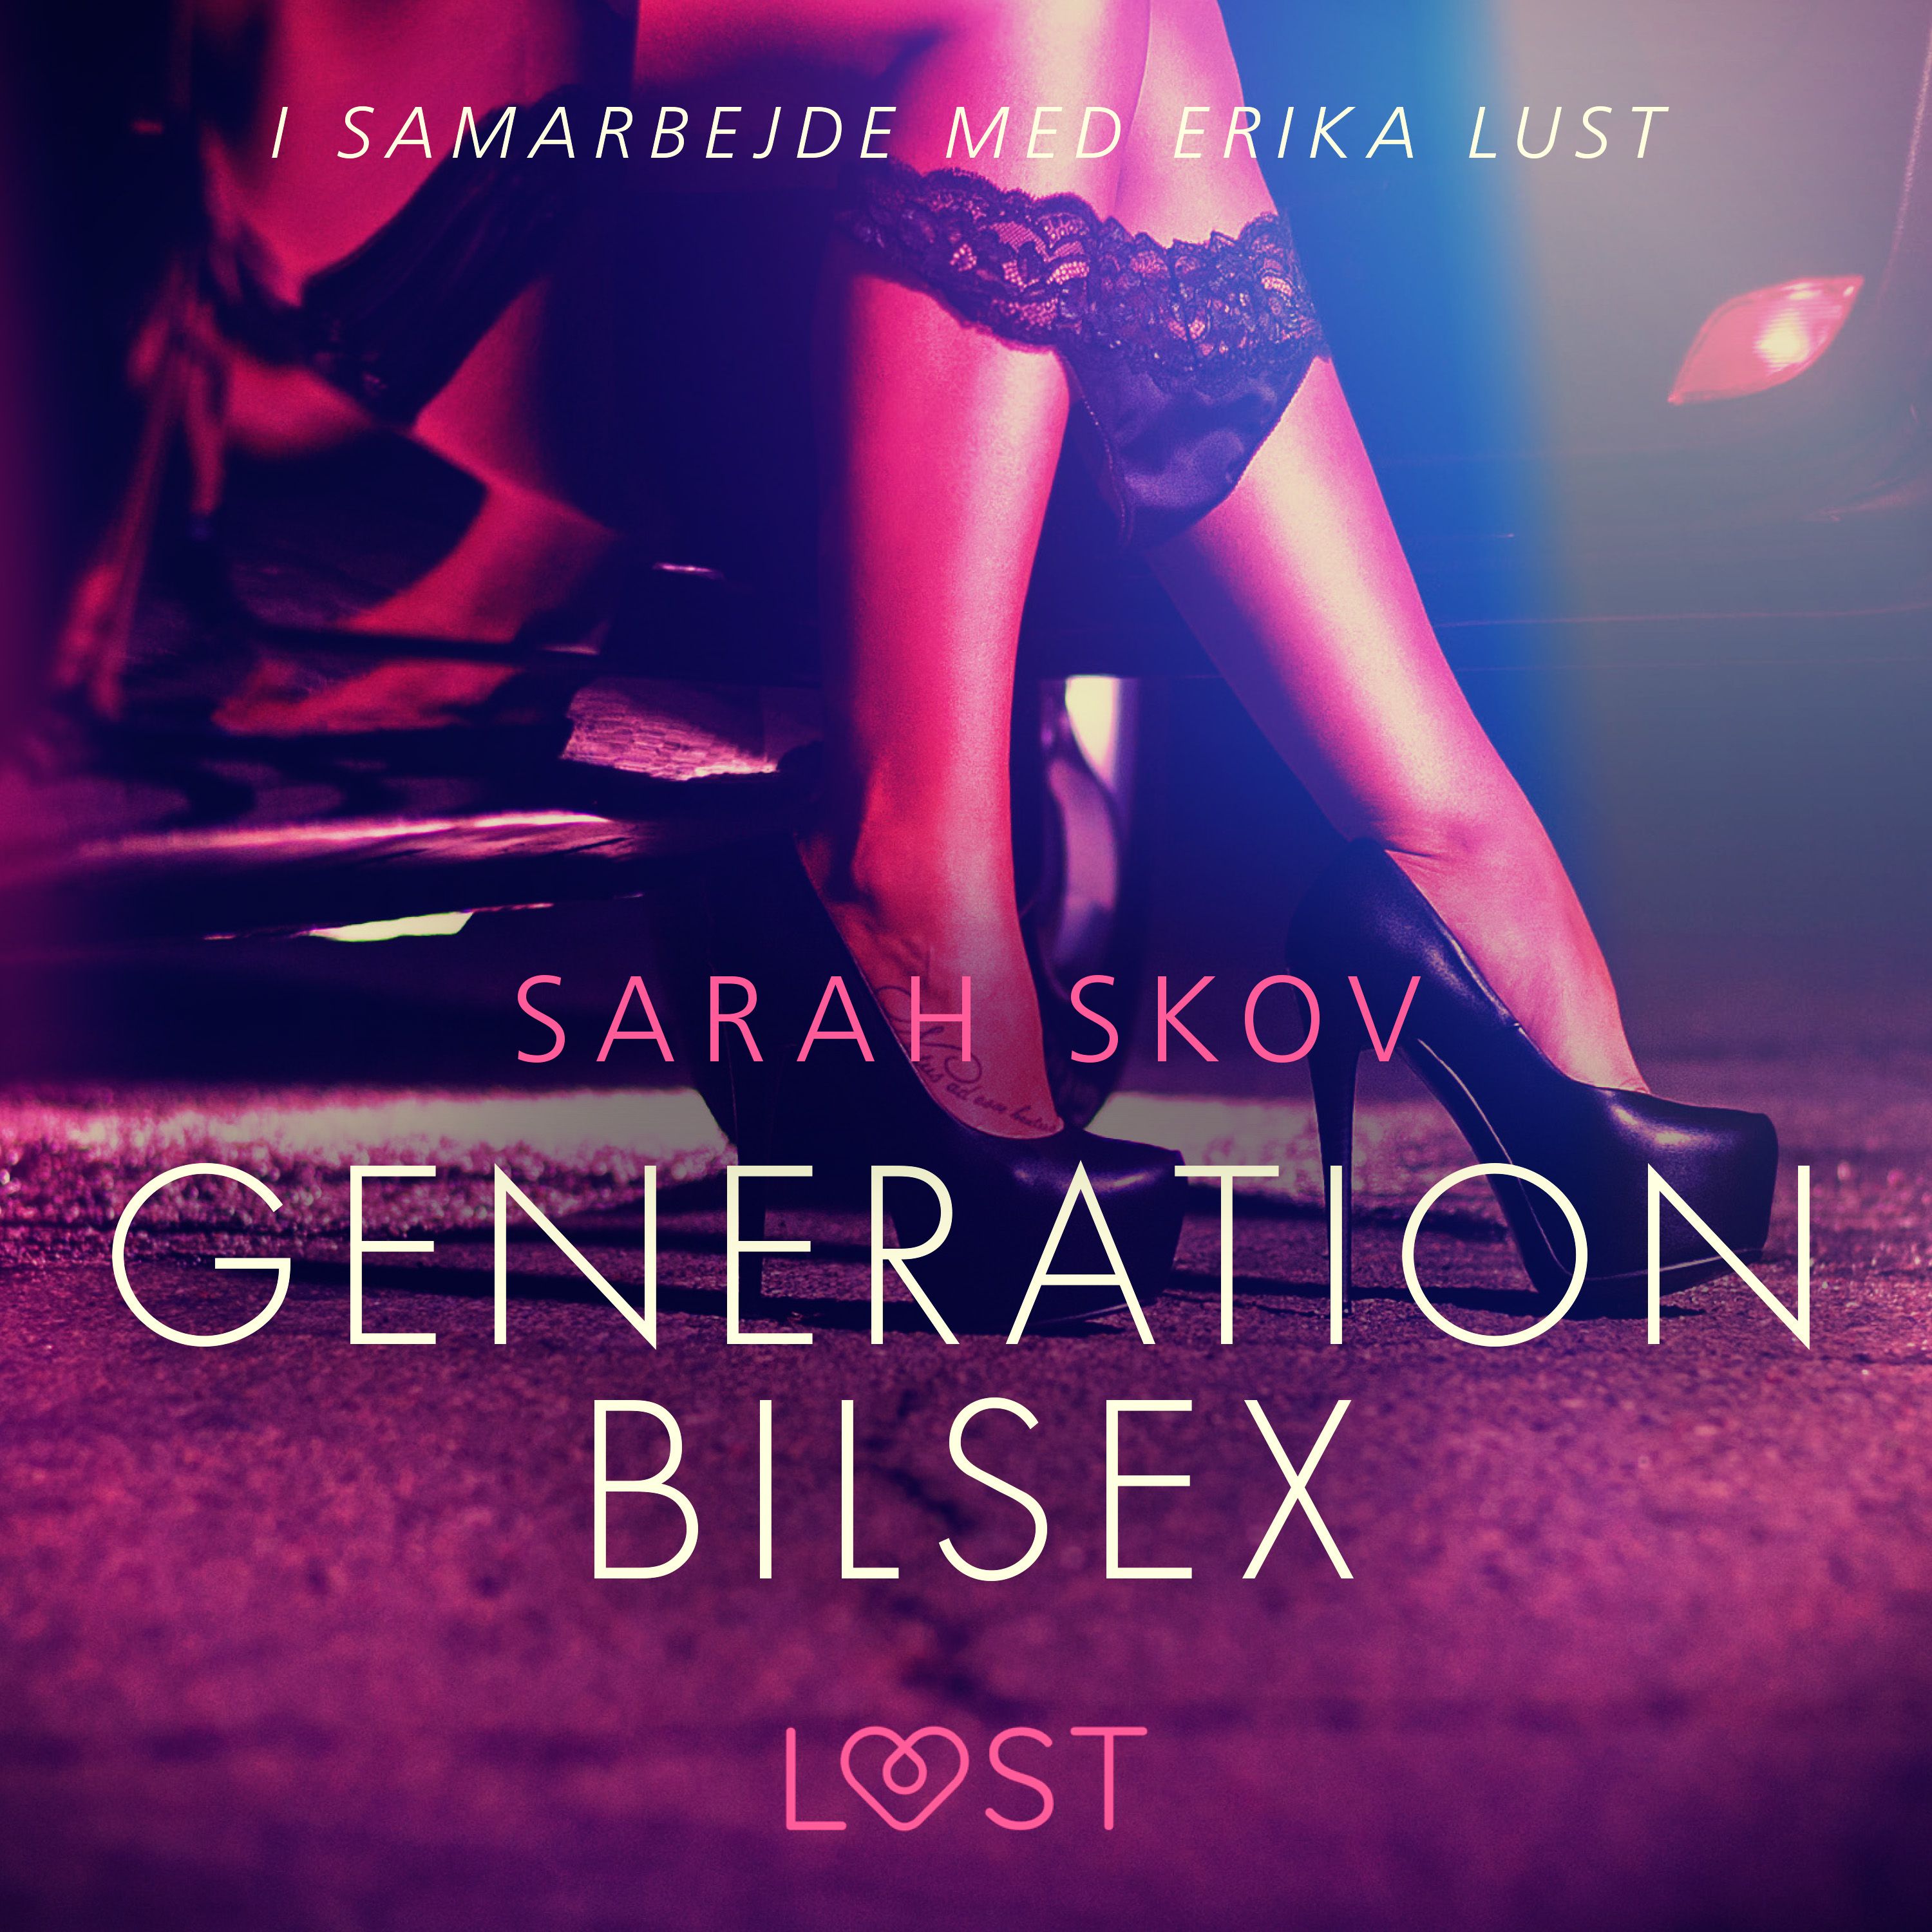 Generation Bilsex, lydbog af Sarah Skov